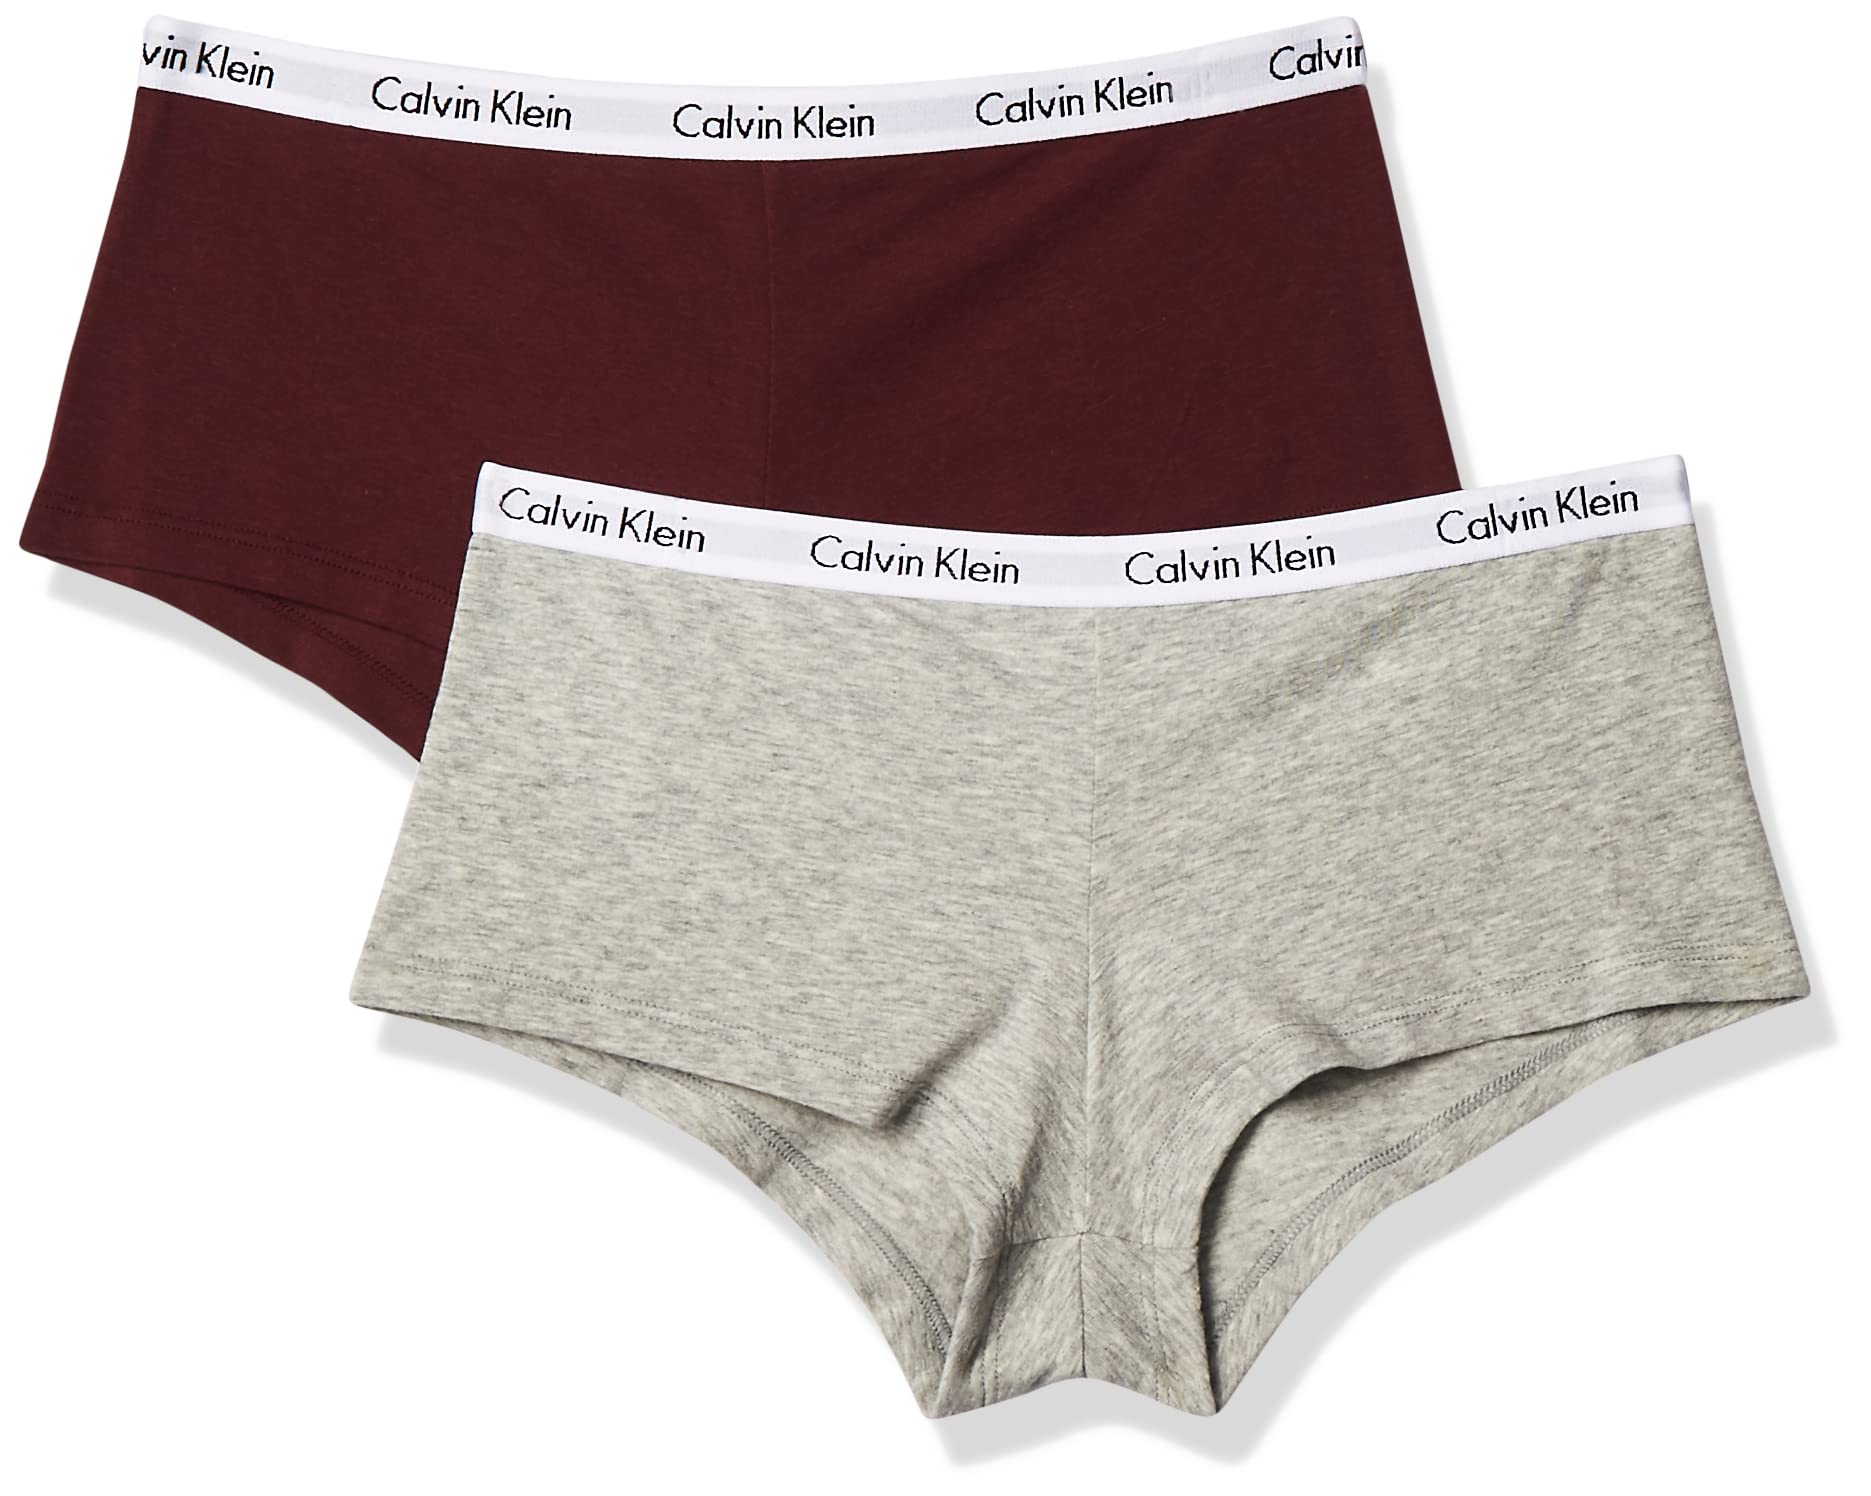 Mua Calvin Klein Women's Carousel Logo Cotton Boyshort Panty trên Amazon Mỹ  chính hãng 2023 | Giaonhan247